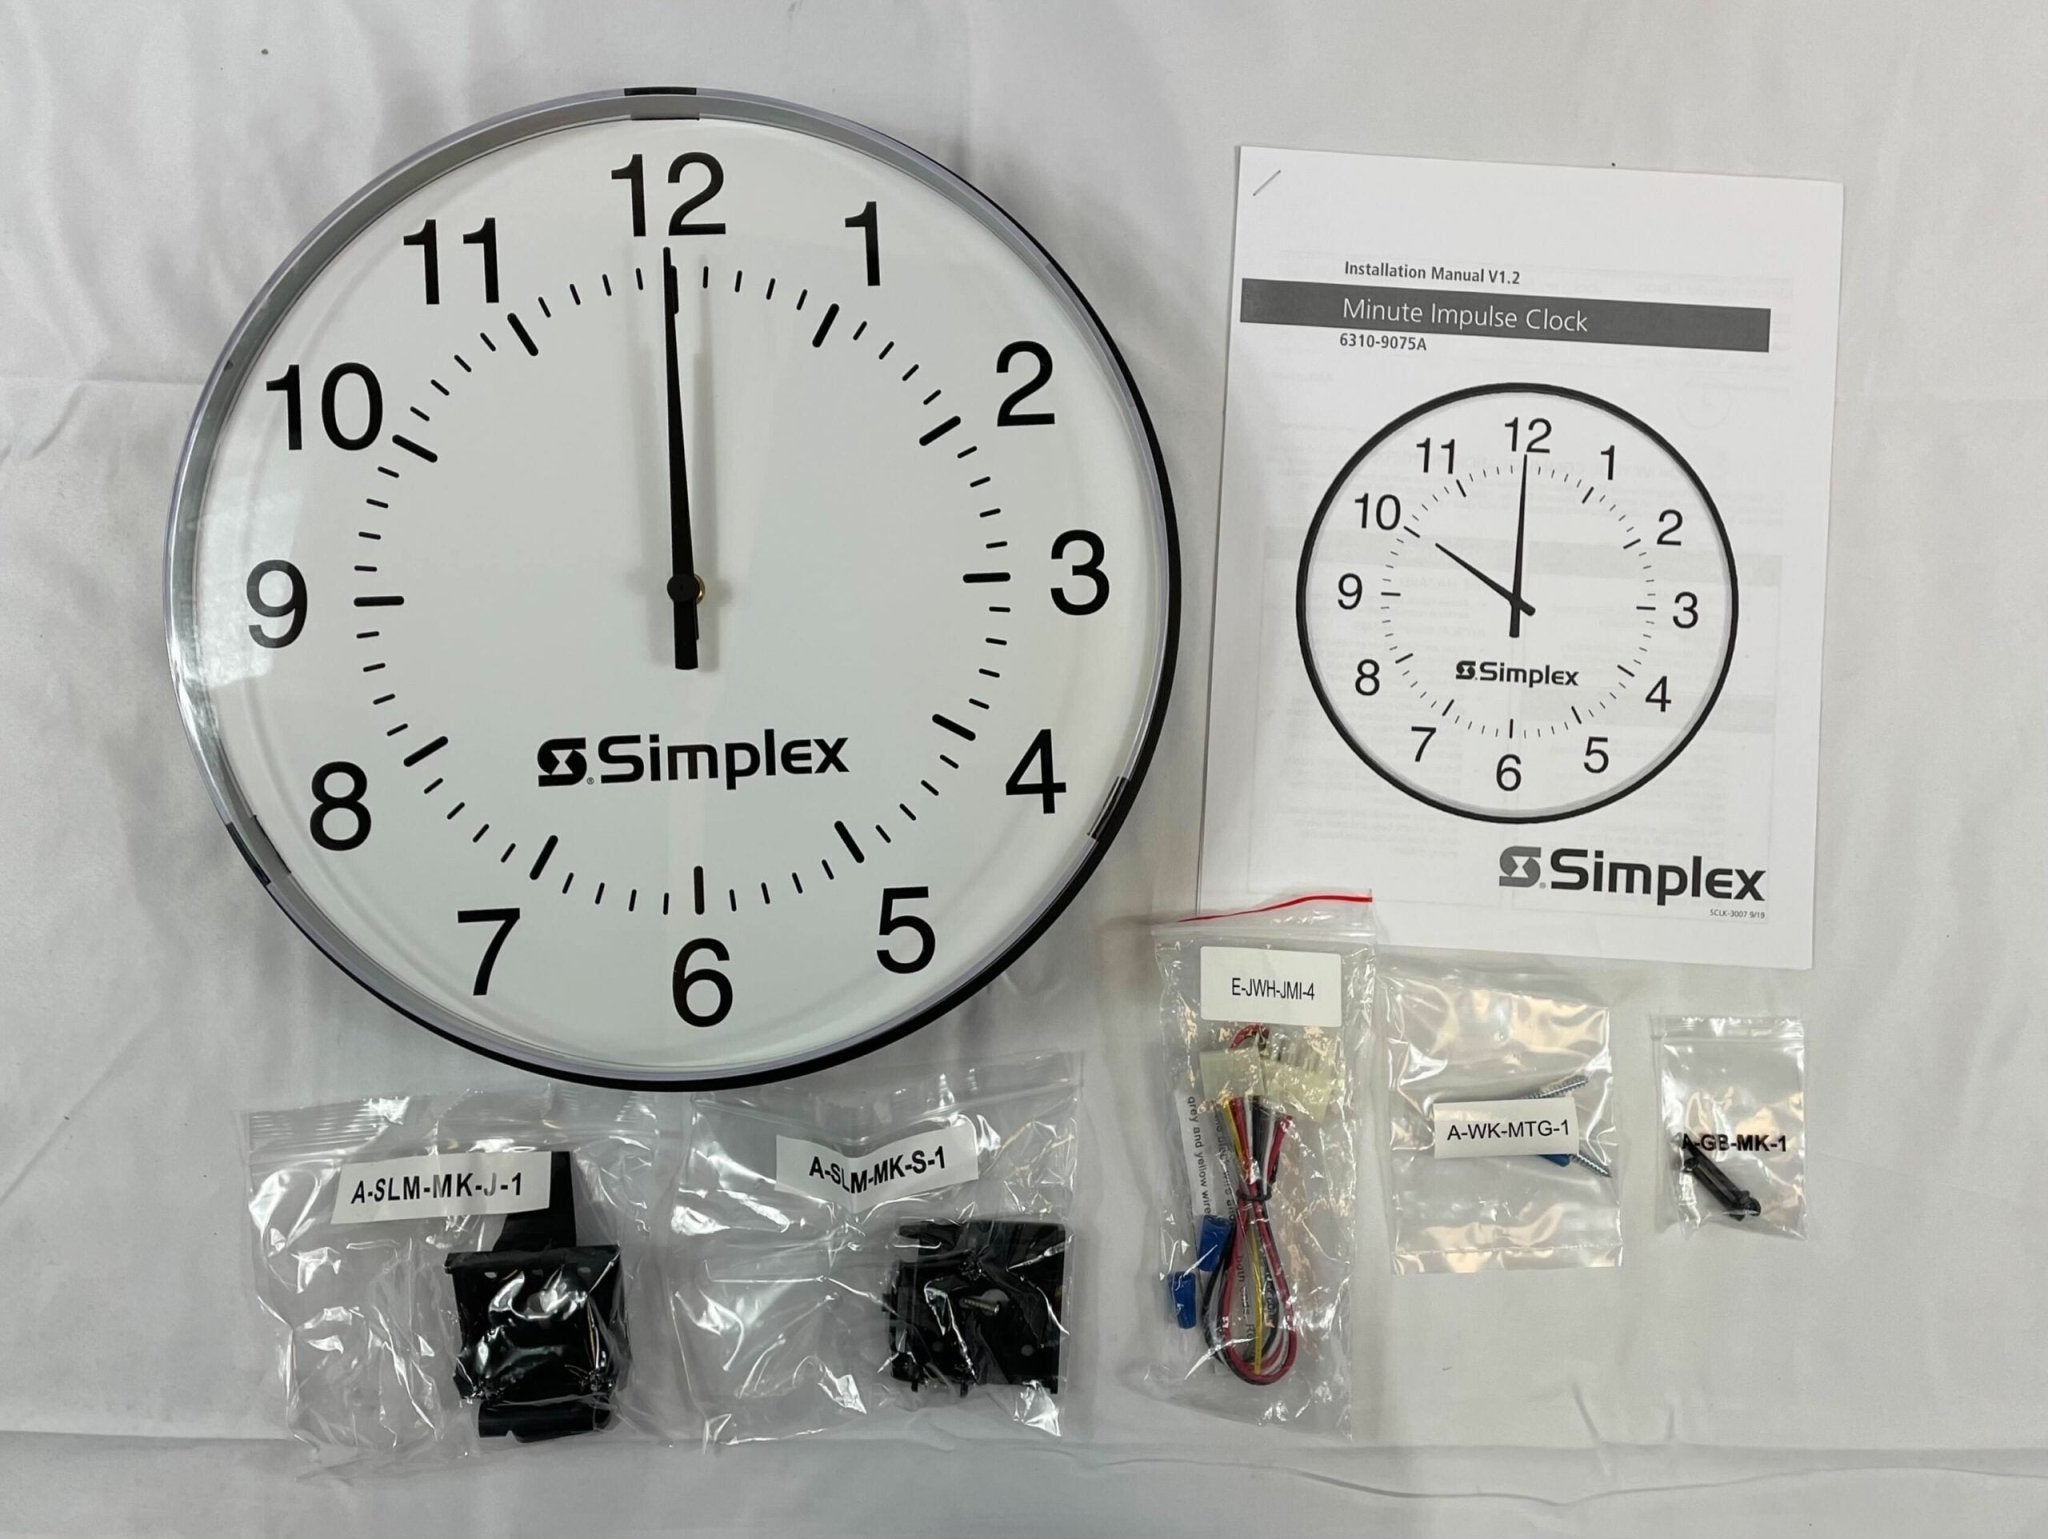 Simplex 6310-9075A Round Slimline Clock - The Fire Alarm Supplier